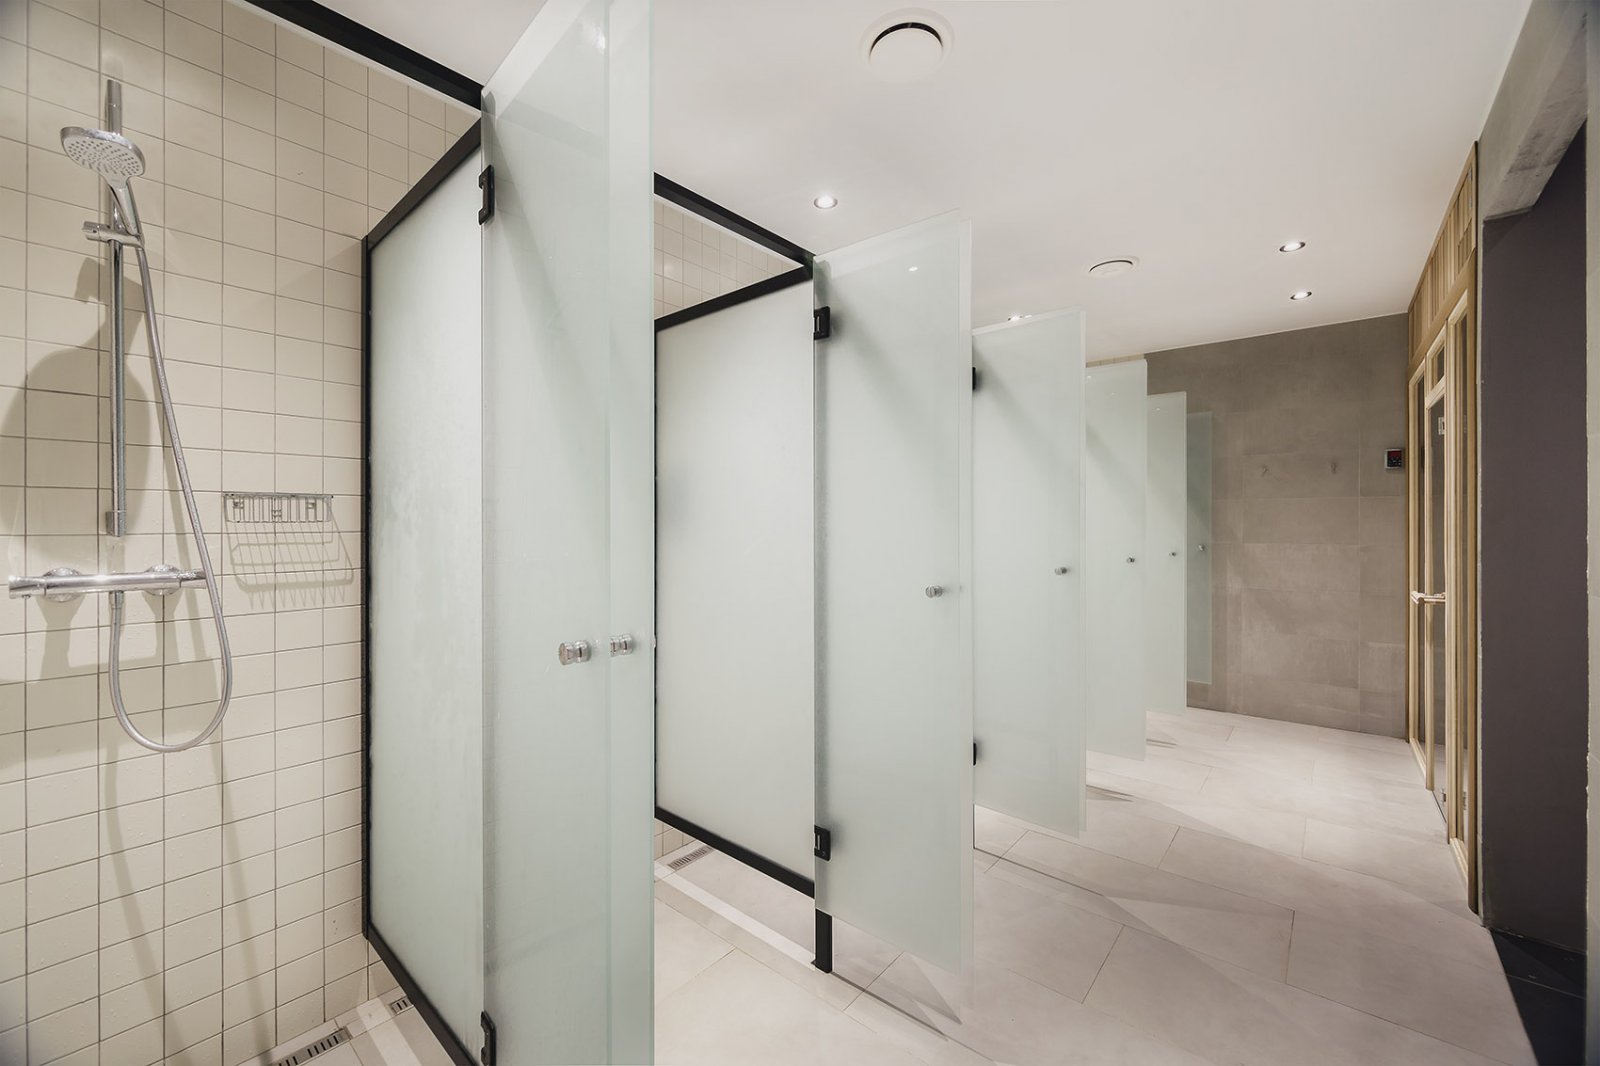 淋浴房怎样做隔断 卫生间淋浴房玻璃做磨砂效果好吗,行业资讯-中玻网